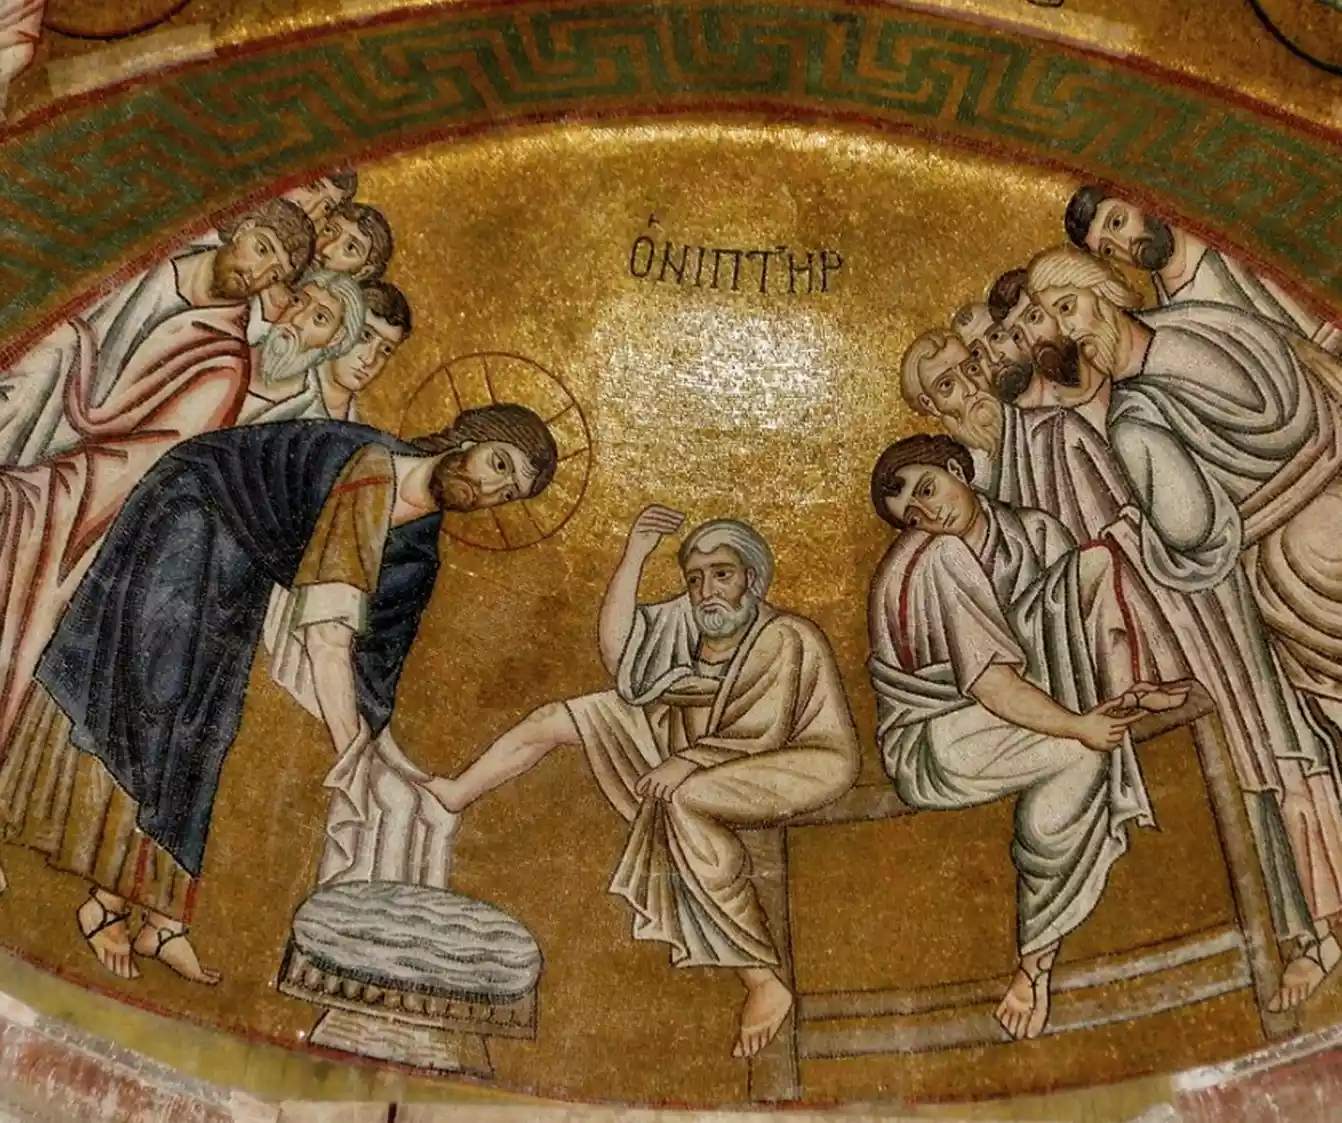 Τα βυζαντινά ψηφιδωτά δεν ήταν απλώς διακοσμητικά στοιχεία